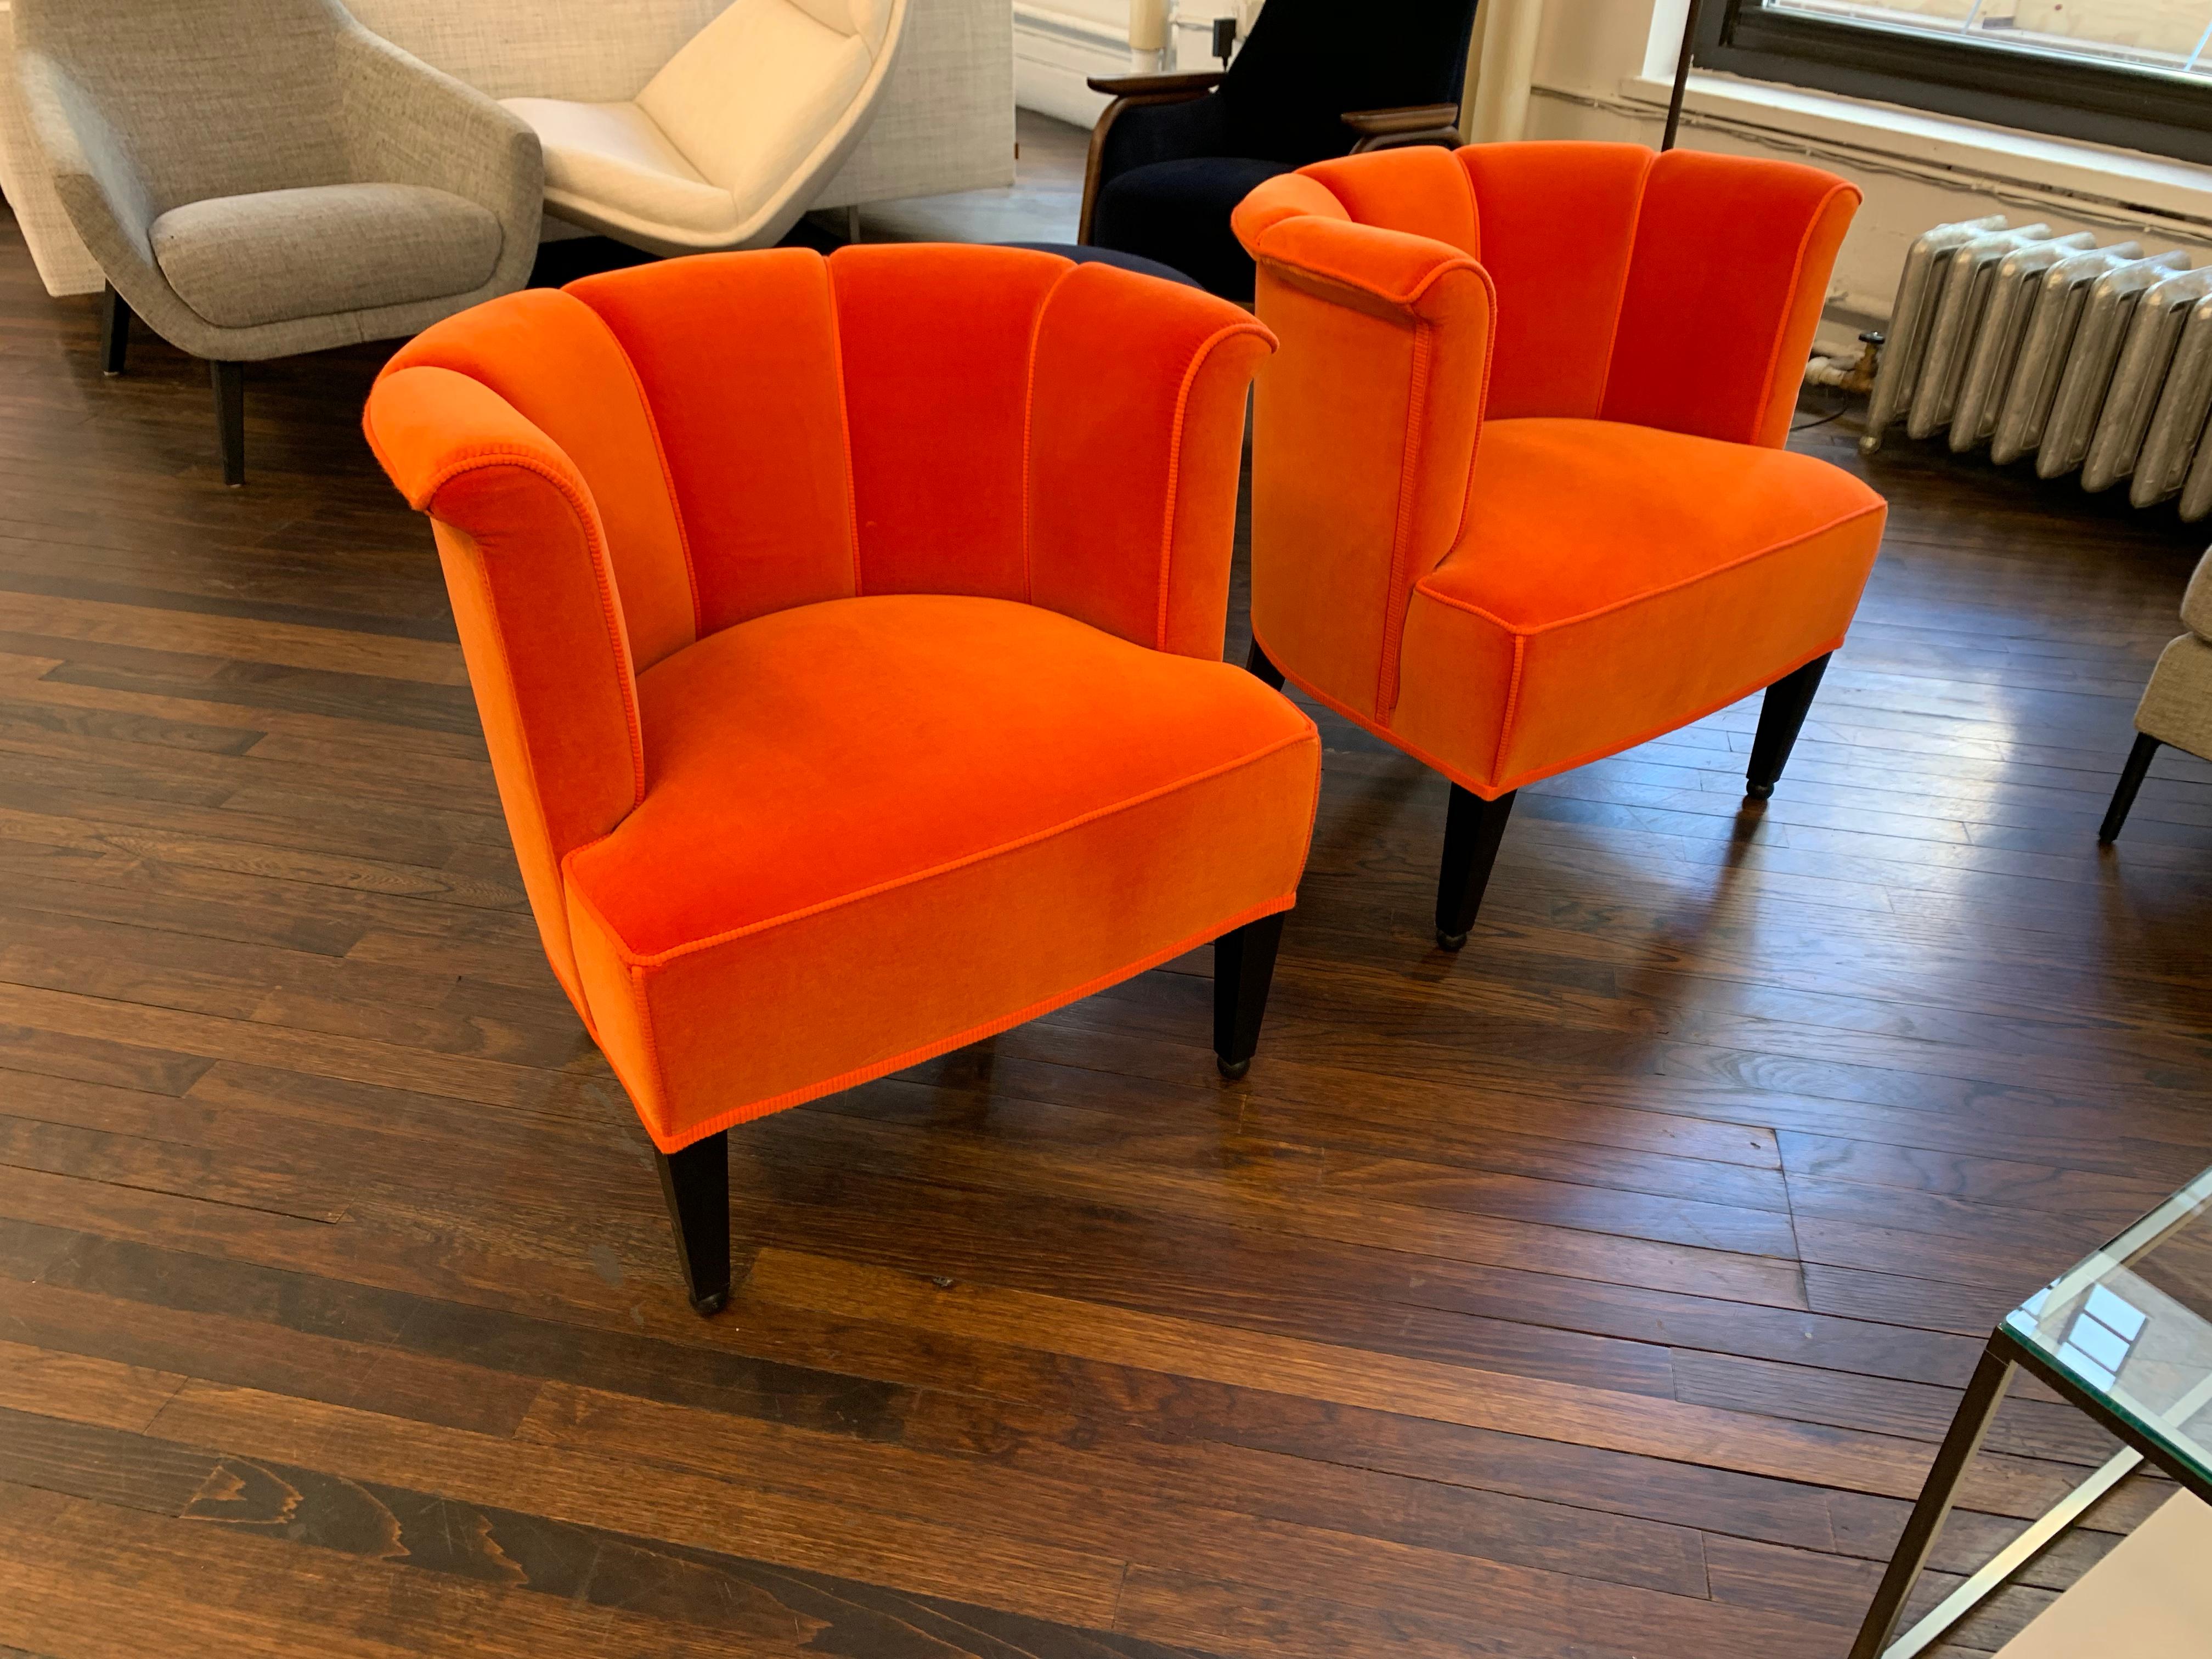 Wood frame
Upholstered in orange velvet
Original price: $8,614.
  